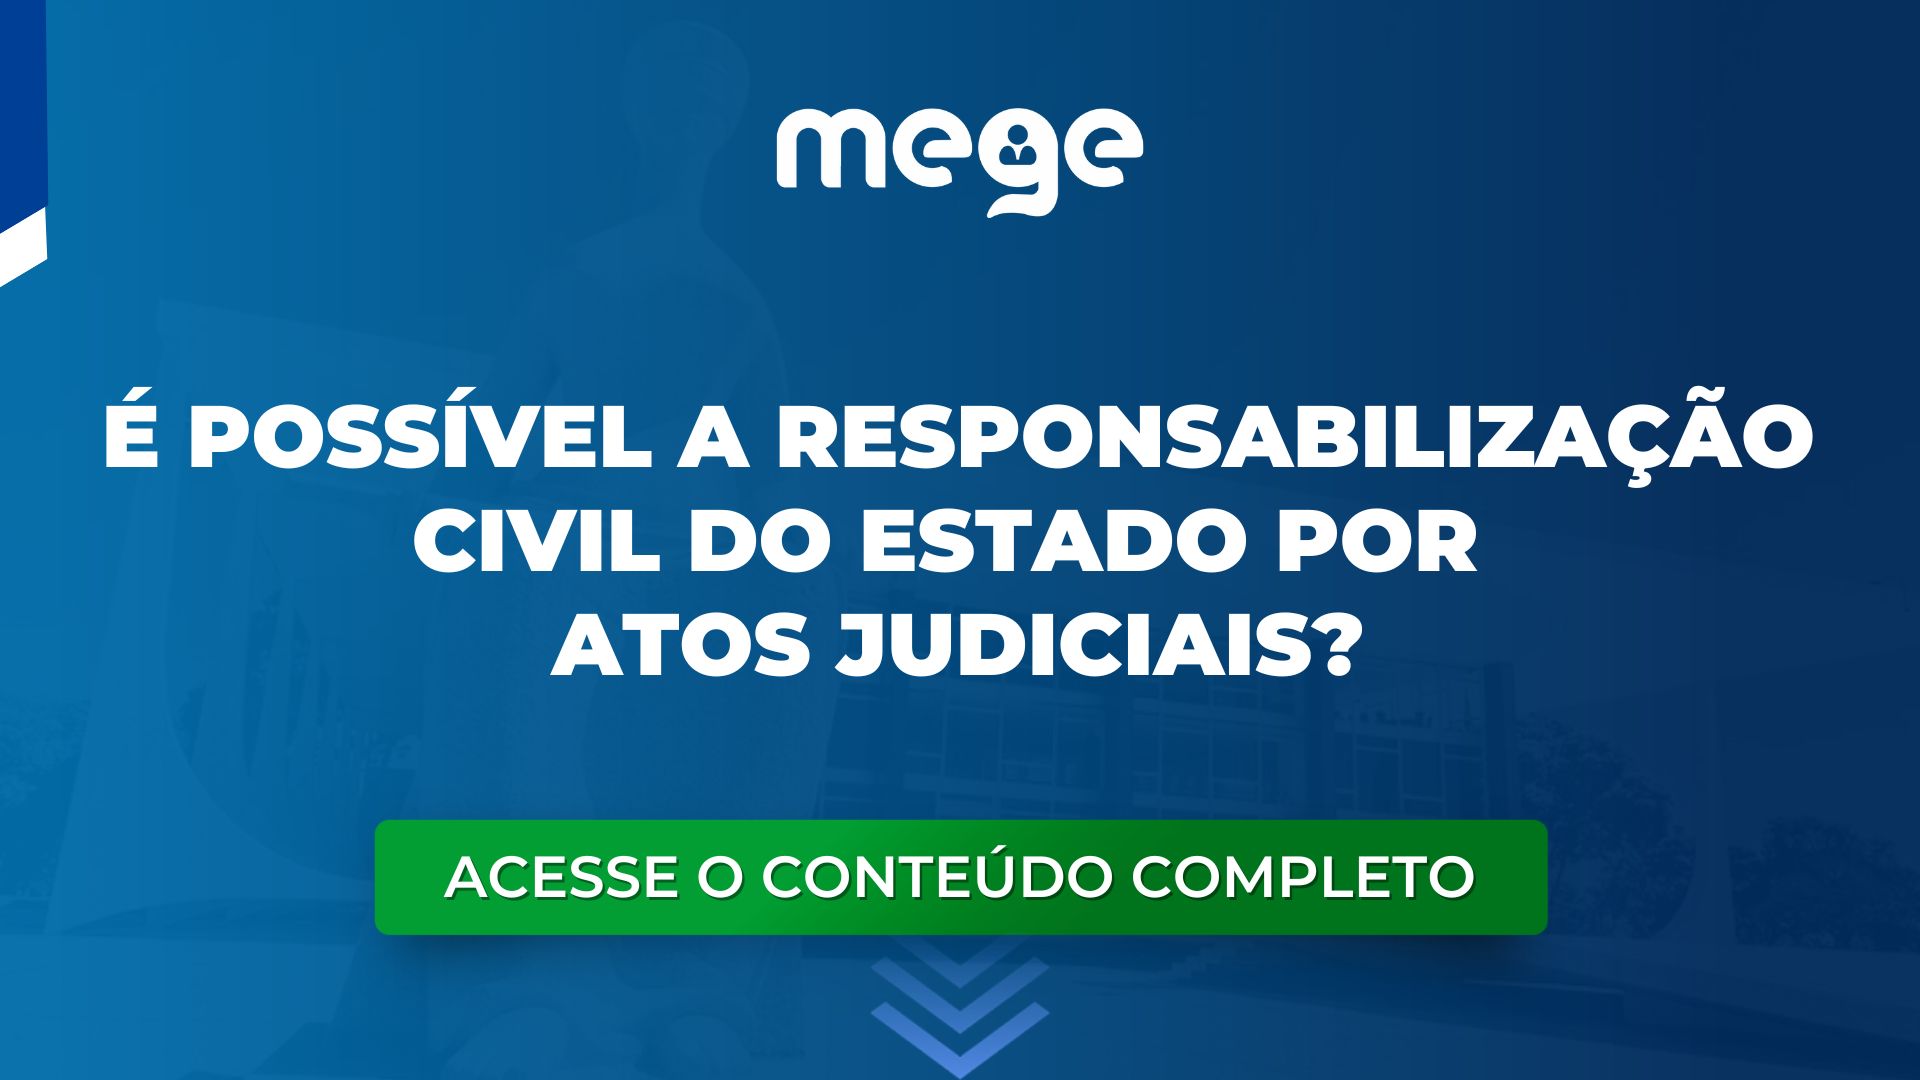 É possível a Responsabilização Civil do Estado por atos judiciais?